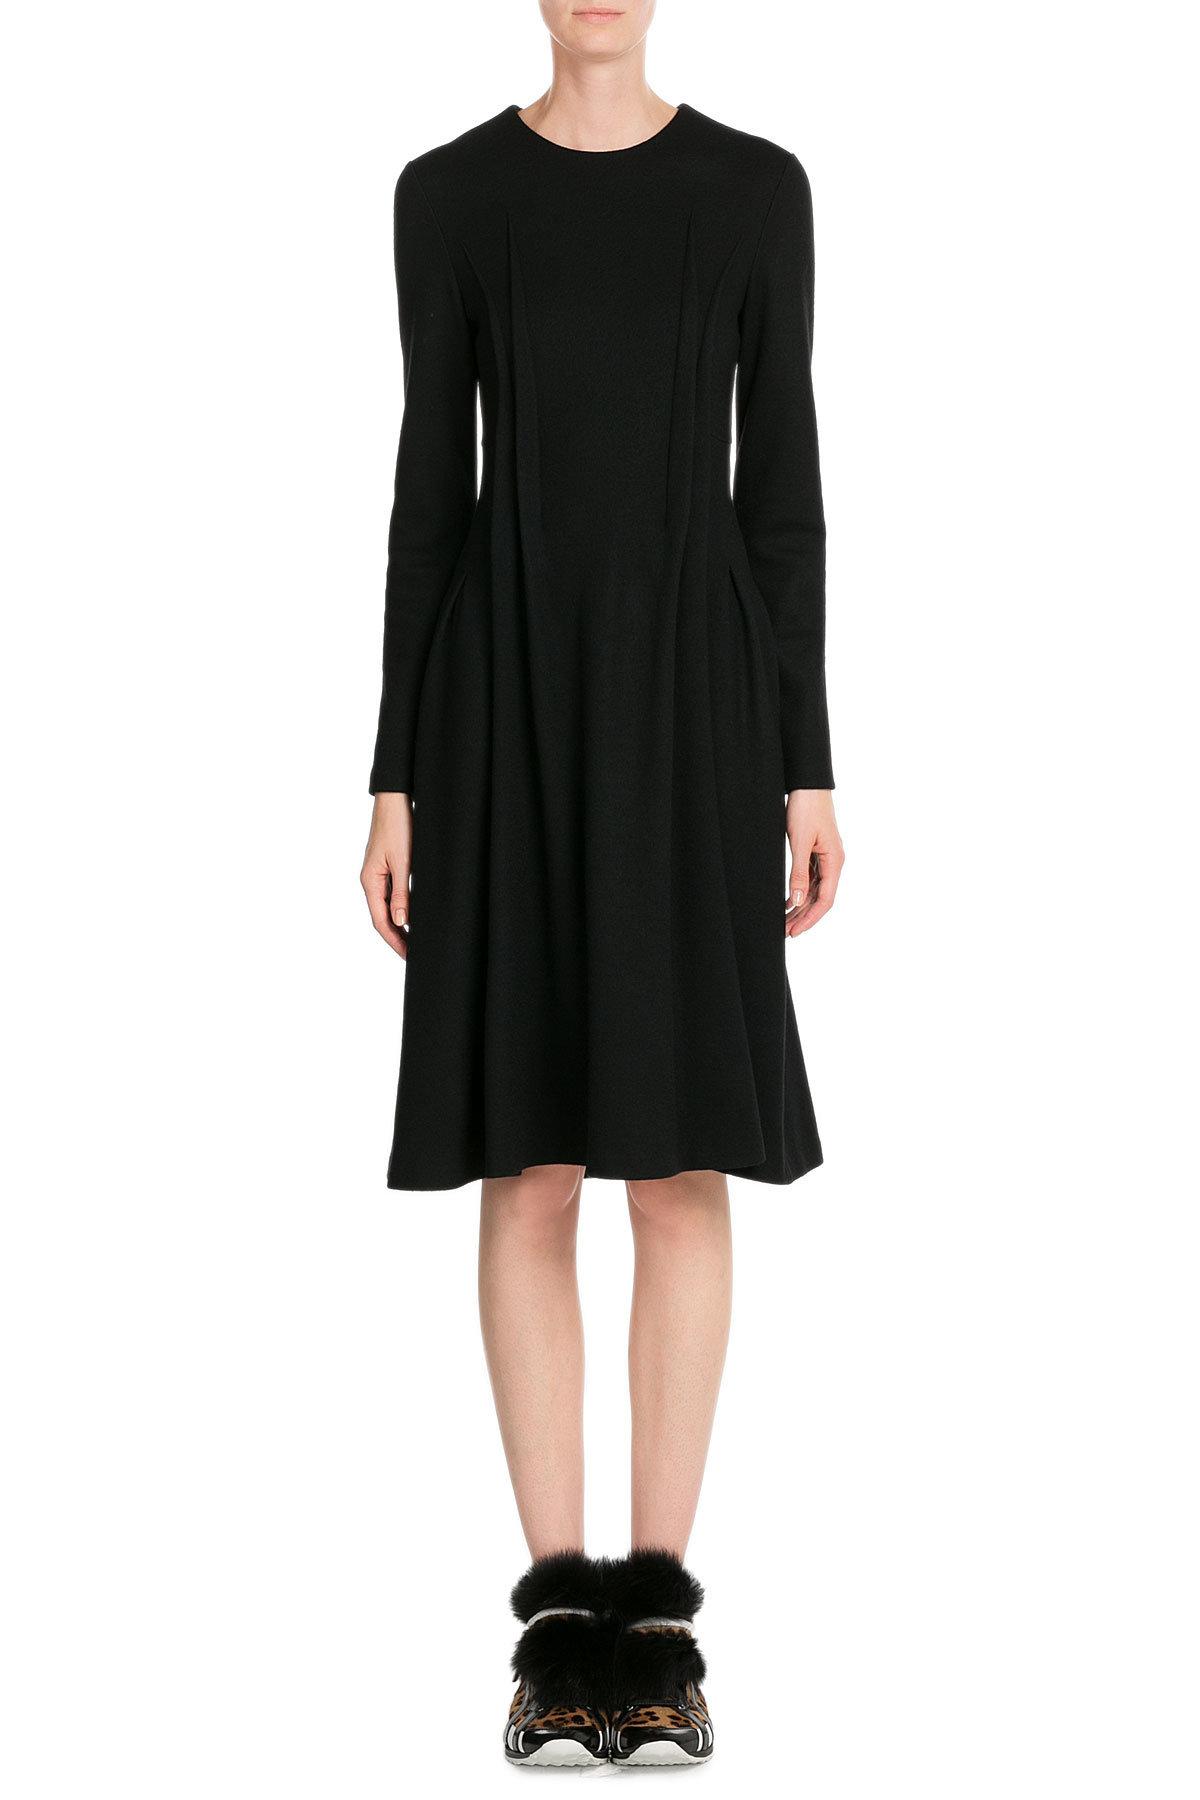 Jil sander Fleece Wool Dress in Black | Lyst